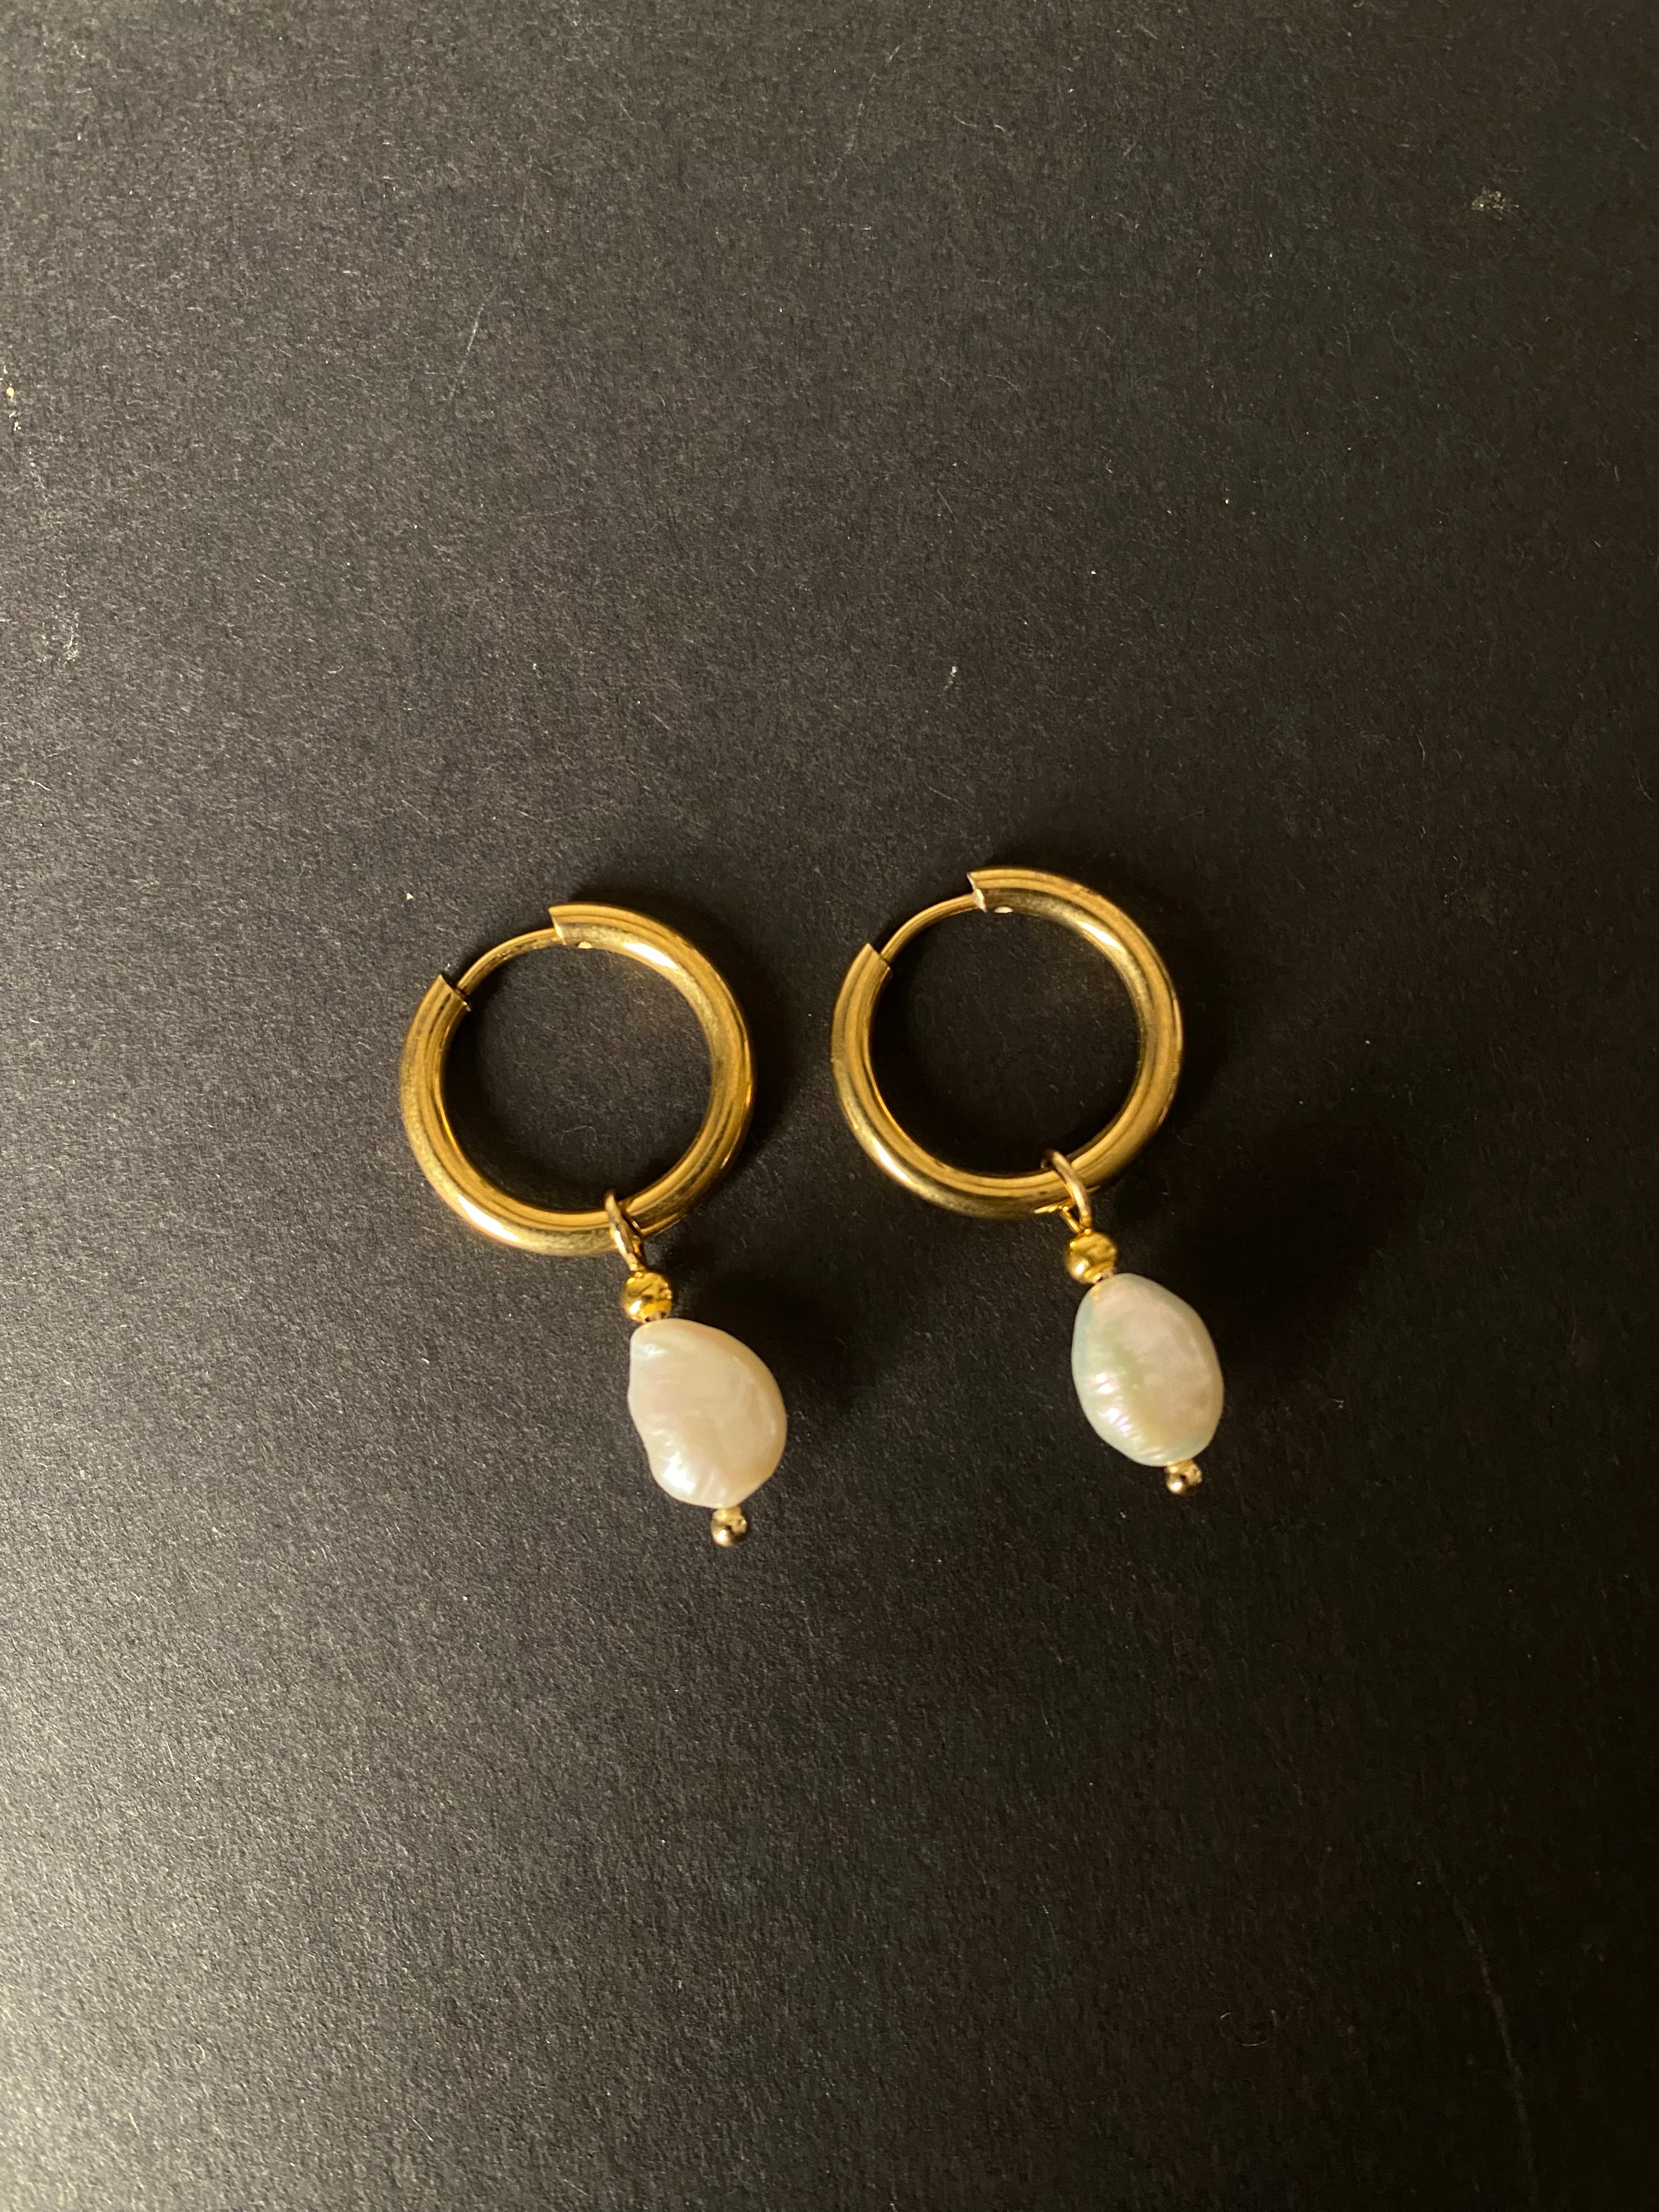 Caro - Earrings "little pearls" in gold